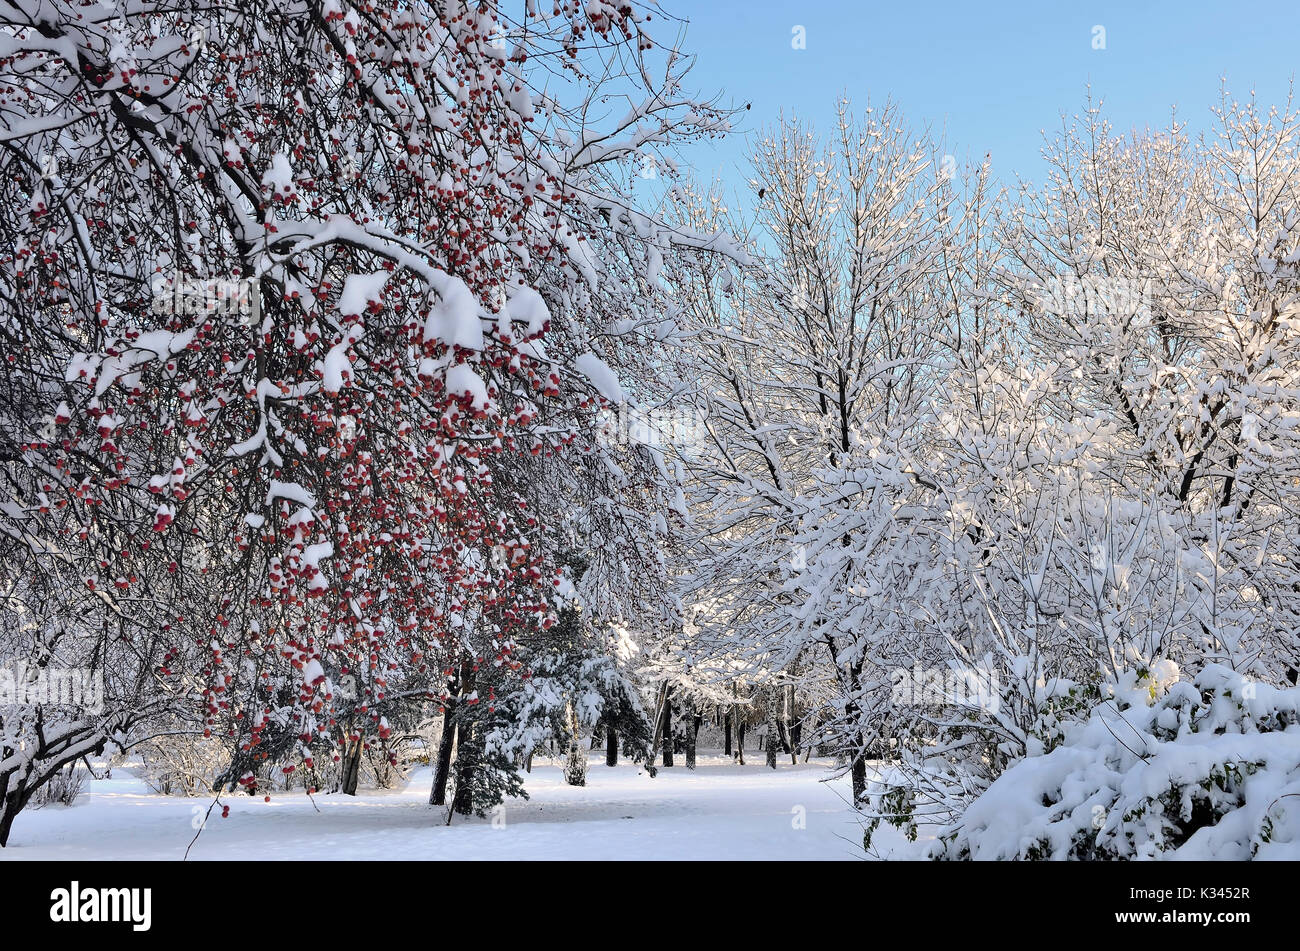 Le decorazioni di Natale della natura invernale - coperta di neve mela selvatica albero con frutti rossi nel parco della città a bright giornata soleggiata - incredibili dettagli dell'inverno Foto Stock